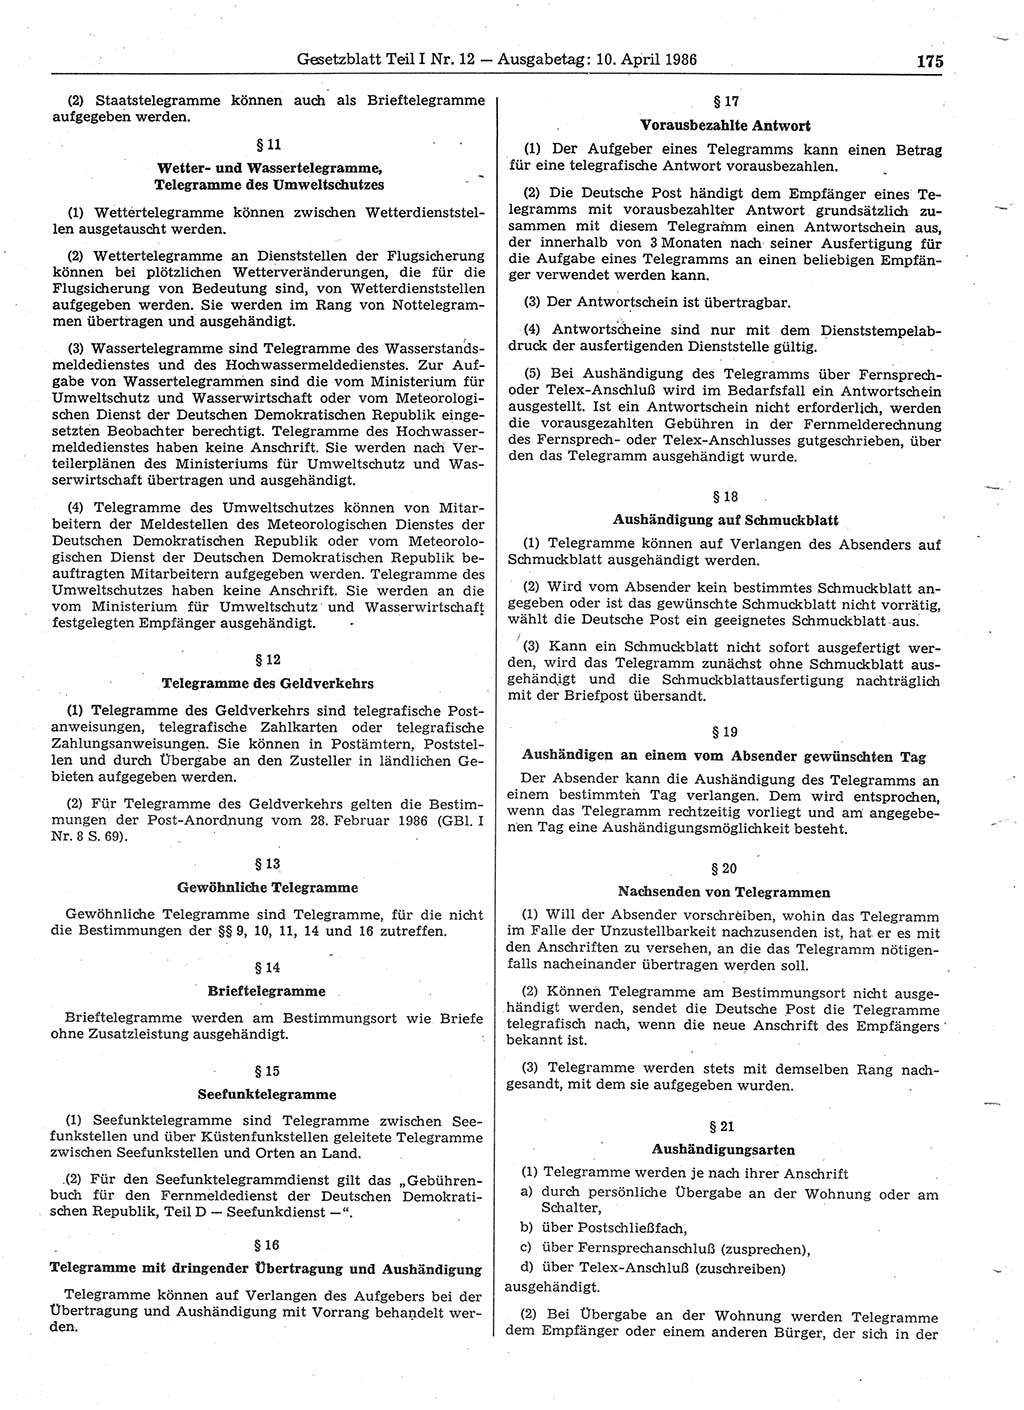 Gesetzblatt (GBl.) der Deutschen Demokratischen Republik (DDR) Teil Ⅰ 1986, Seite 175 (GBl. DDR Ⅰ 1986, S. 175)